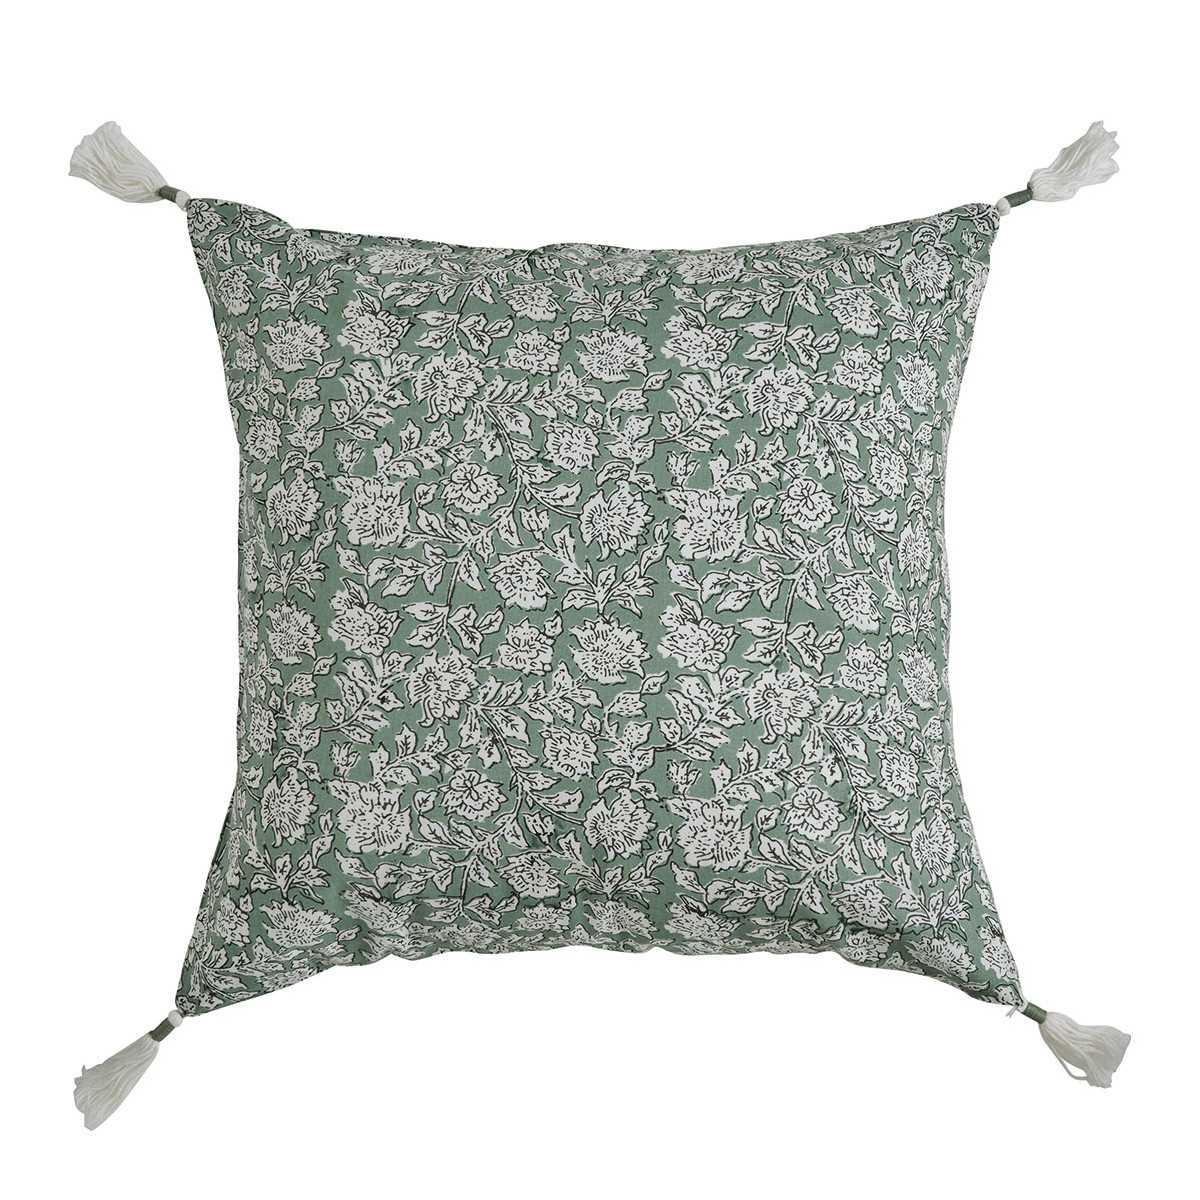 INTERIEUR- DECORATION|EDEN cotton cushion cover - Celadon - 50 x 50 cmBLANC D'IVOIRECushions